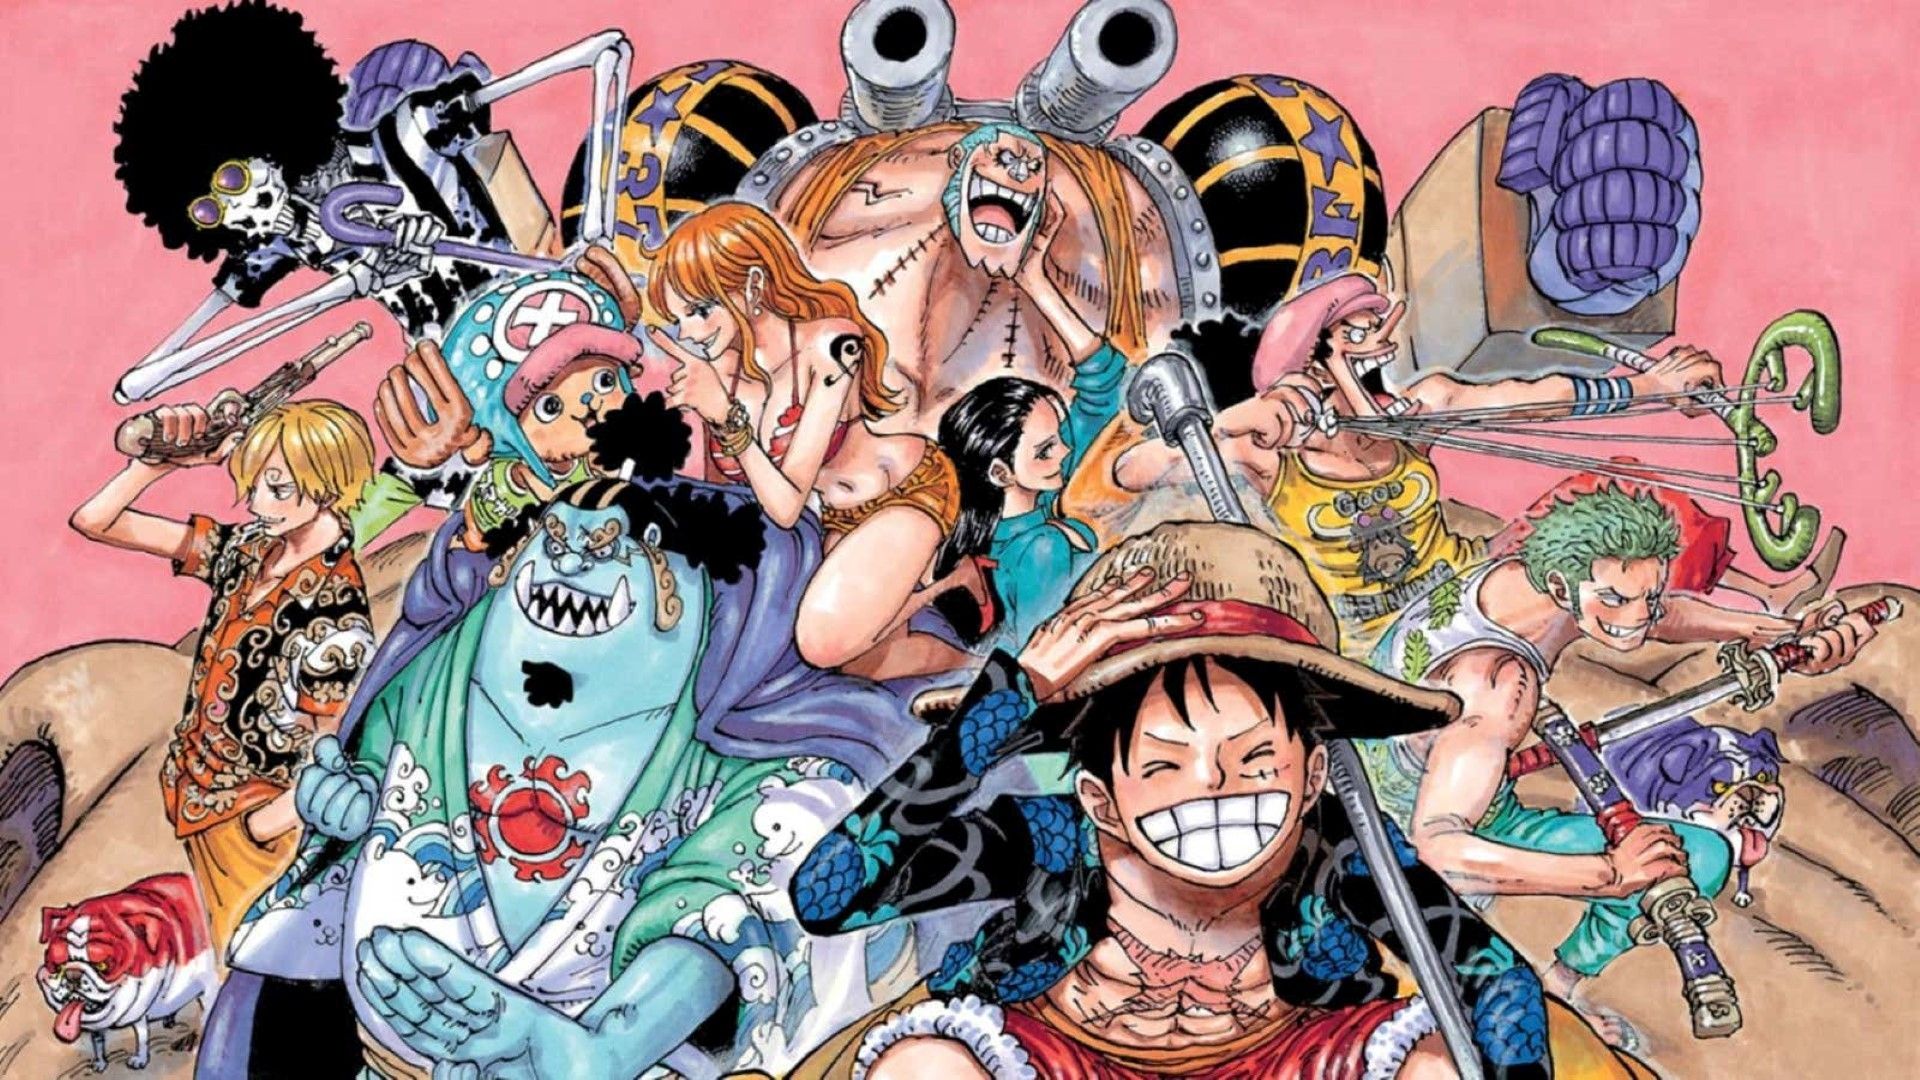 Os 10 personagens mais zuados, estranhos e esquisitos de One Piece -  Aficionados